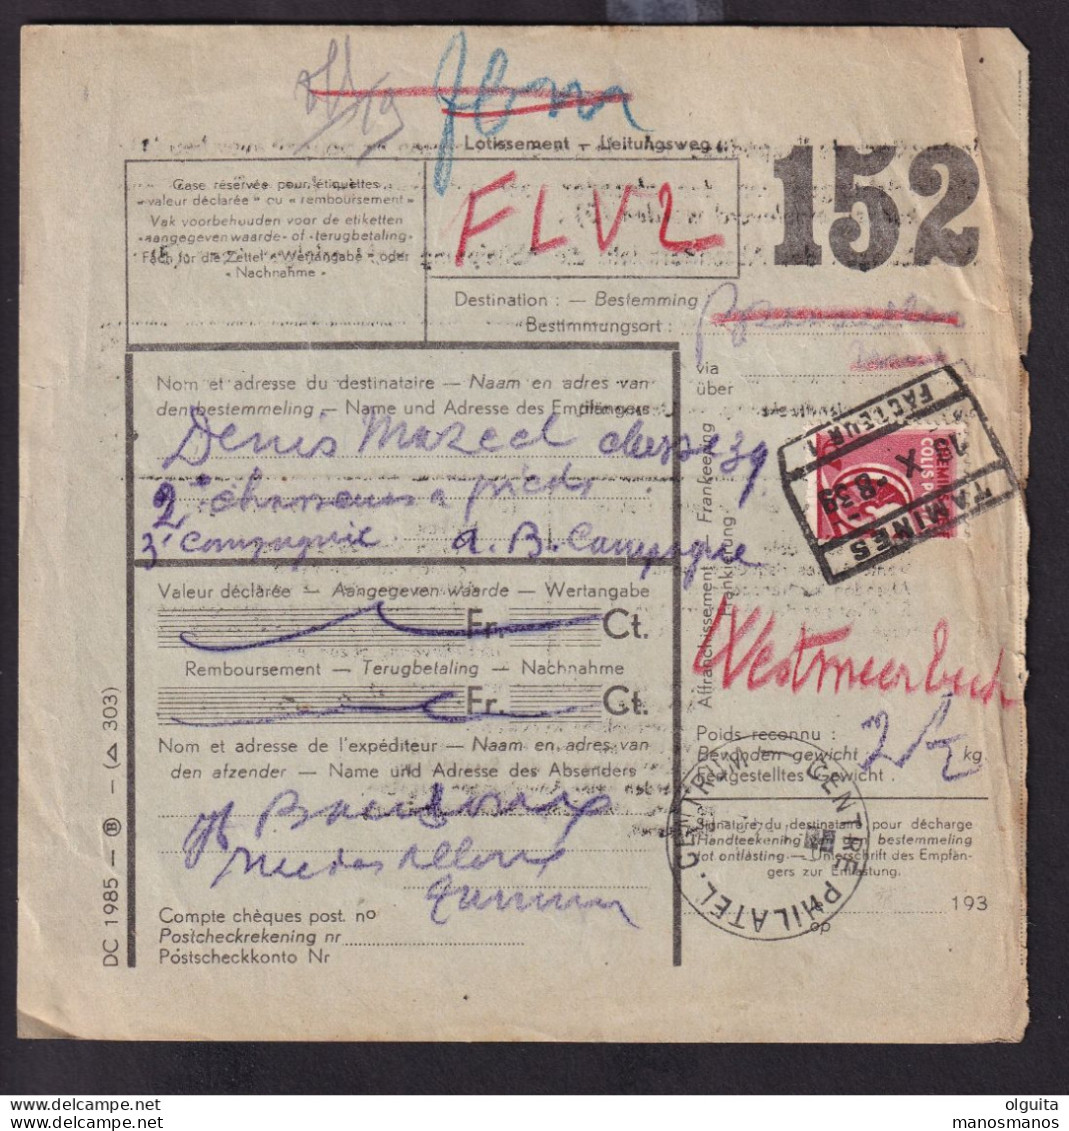 008/39 - Bulletin D' Expédition Colis Militaire Demi-Timbre Gare De TAMINES 1939 - Documents & Fragments